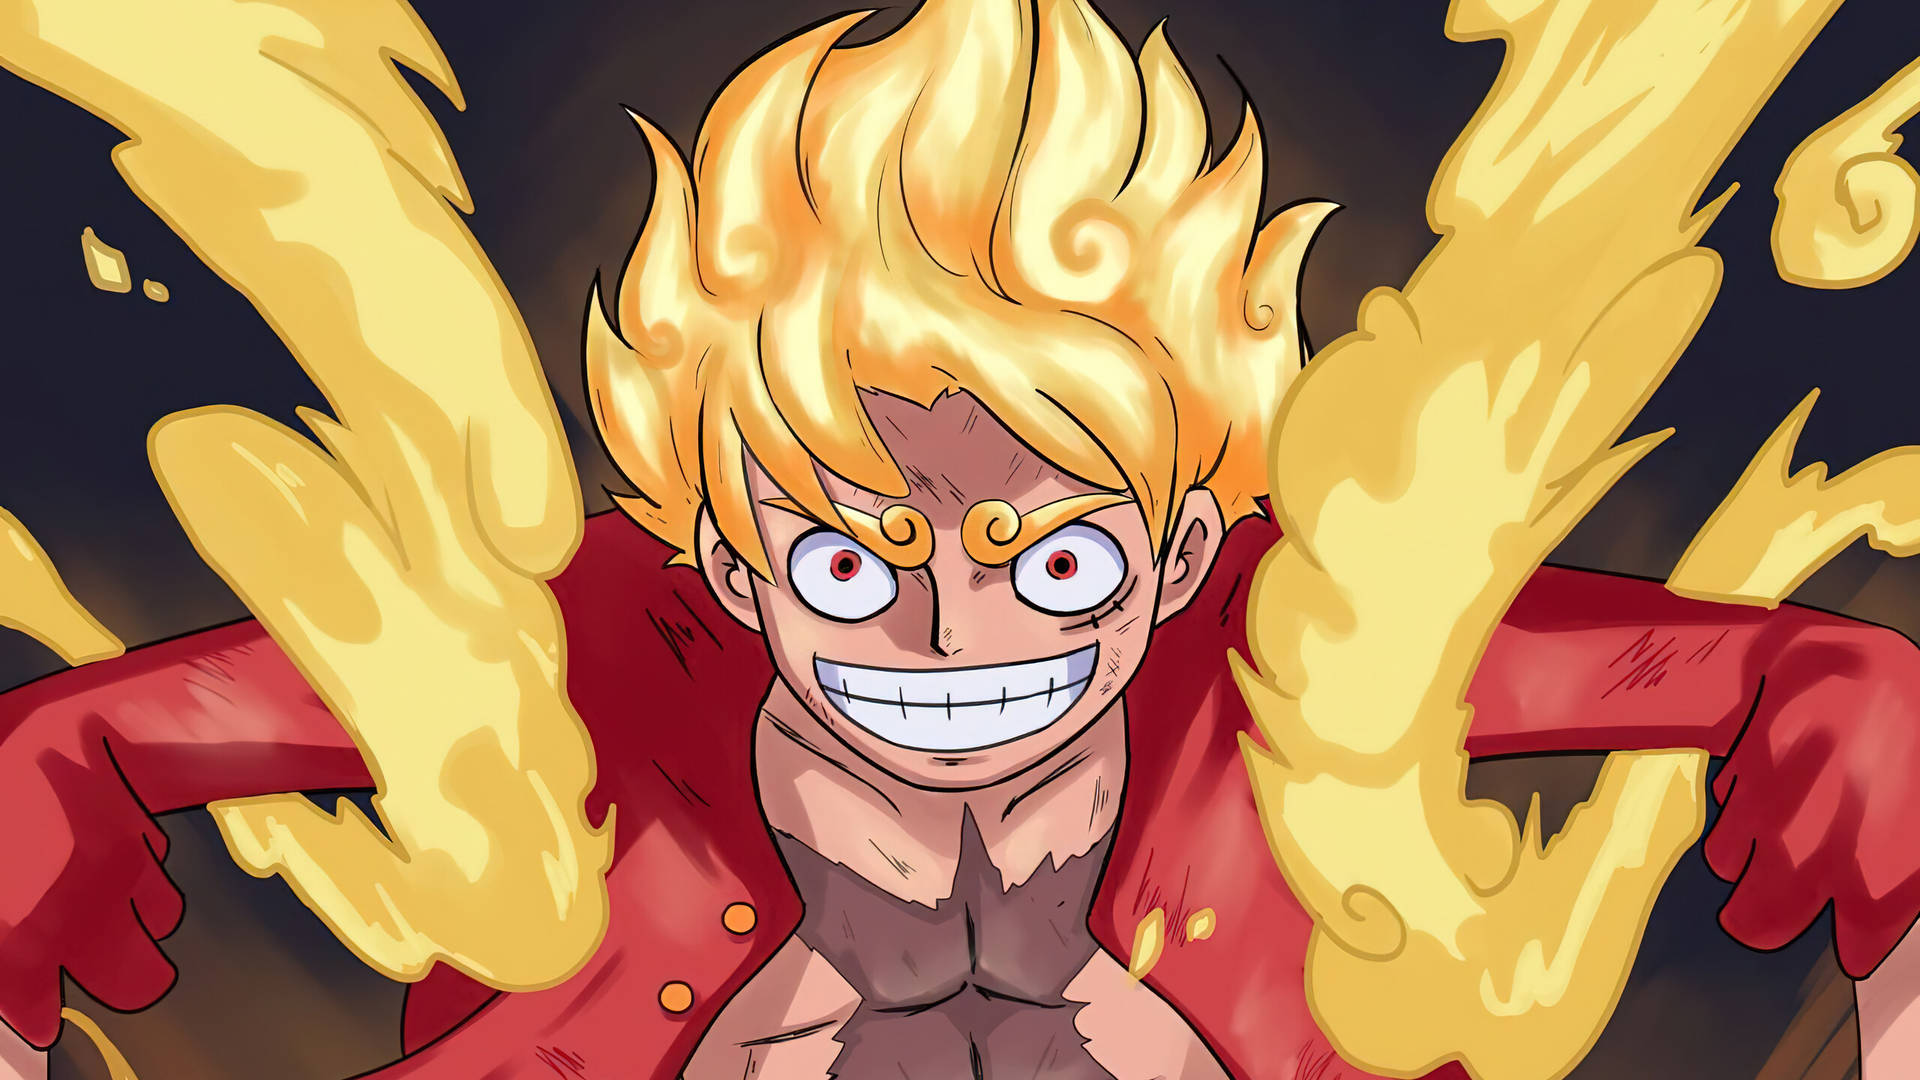 Luffy 4k Burning Orange Hair Background